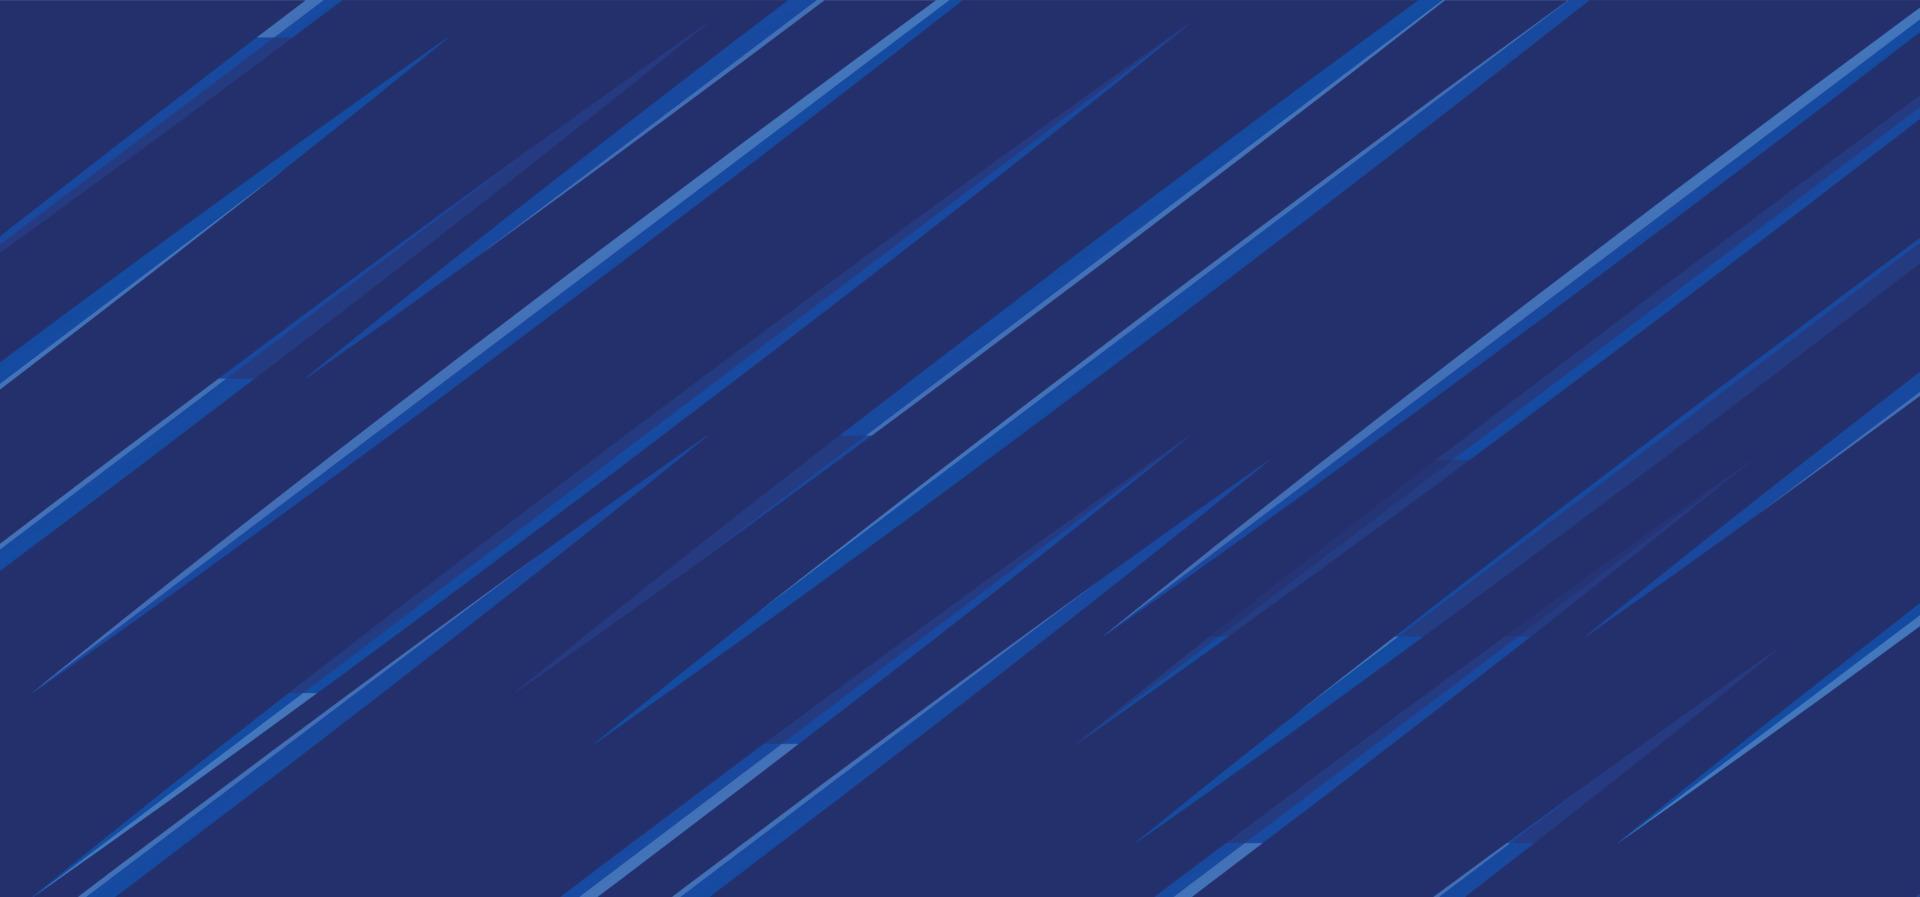 abstrait bleu. conception de présentation de fond abstrait bleu simple moderne pour les entreprises et les institutions. vecteur